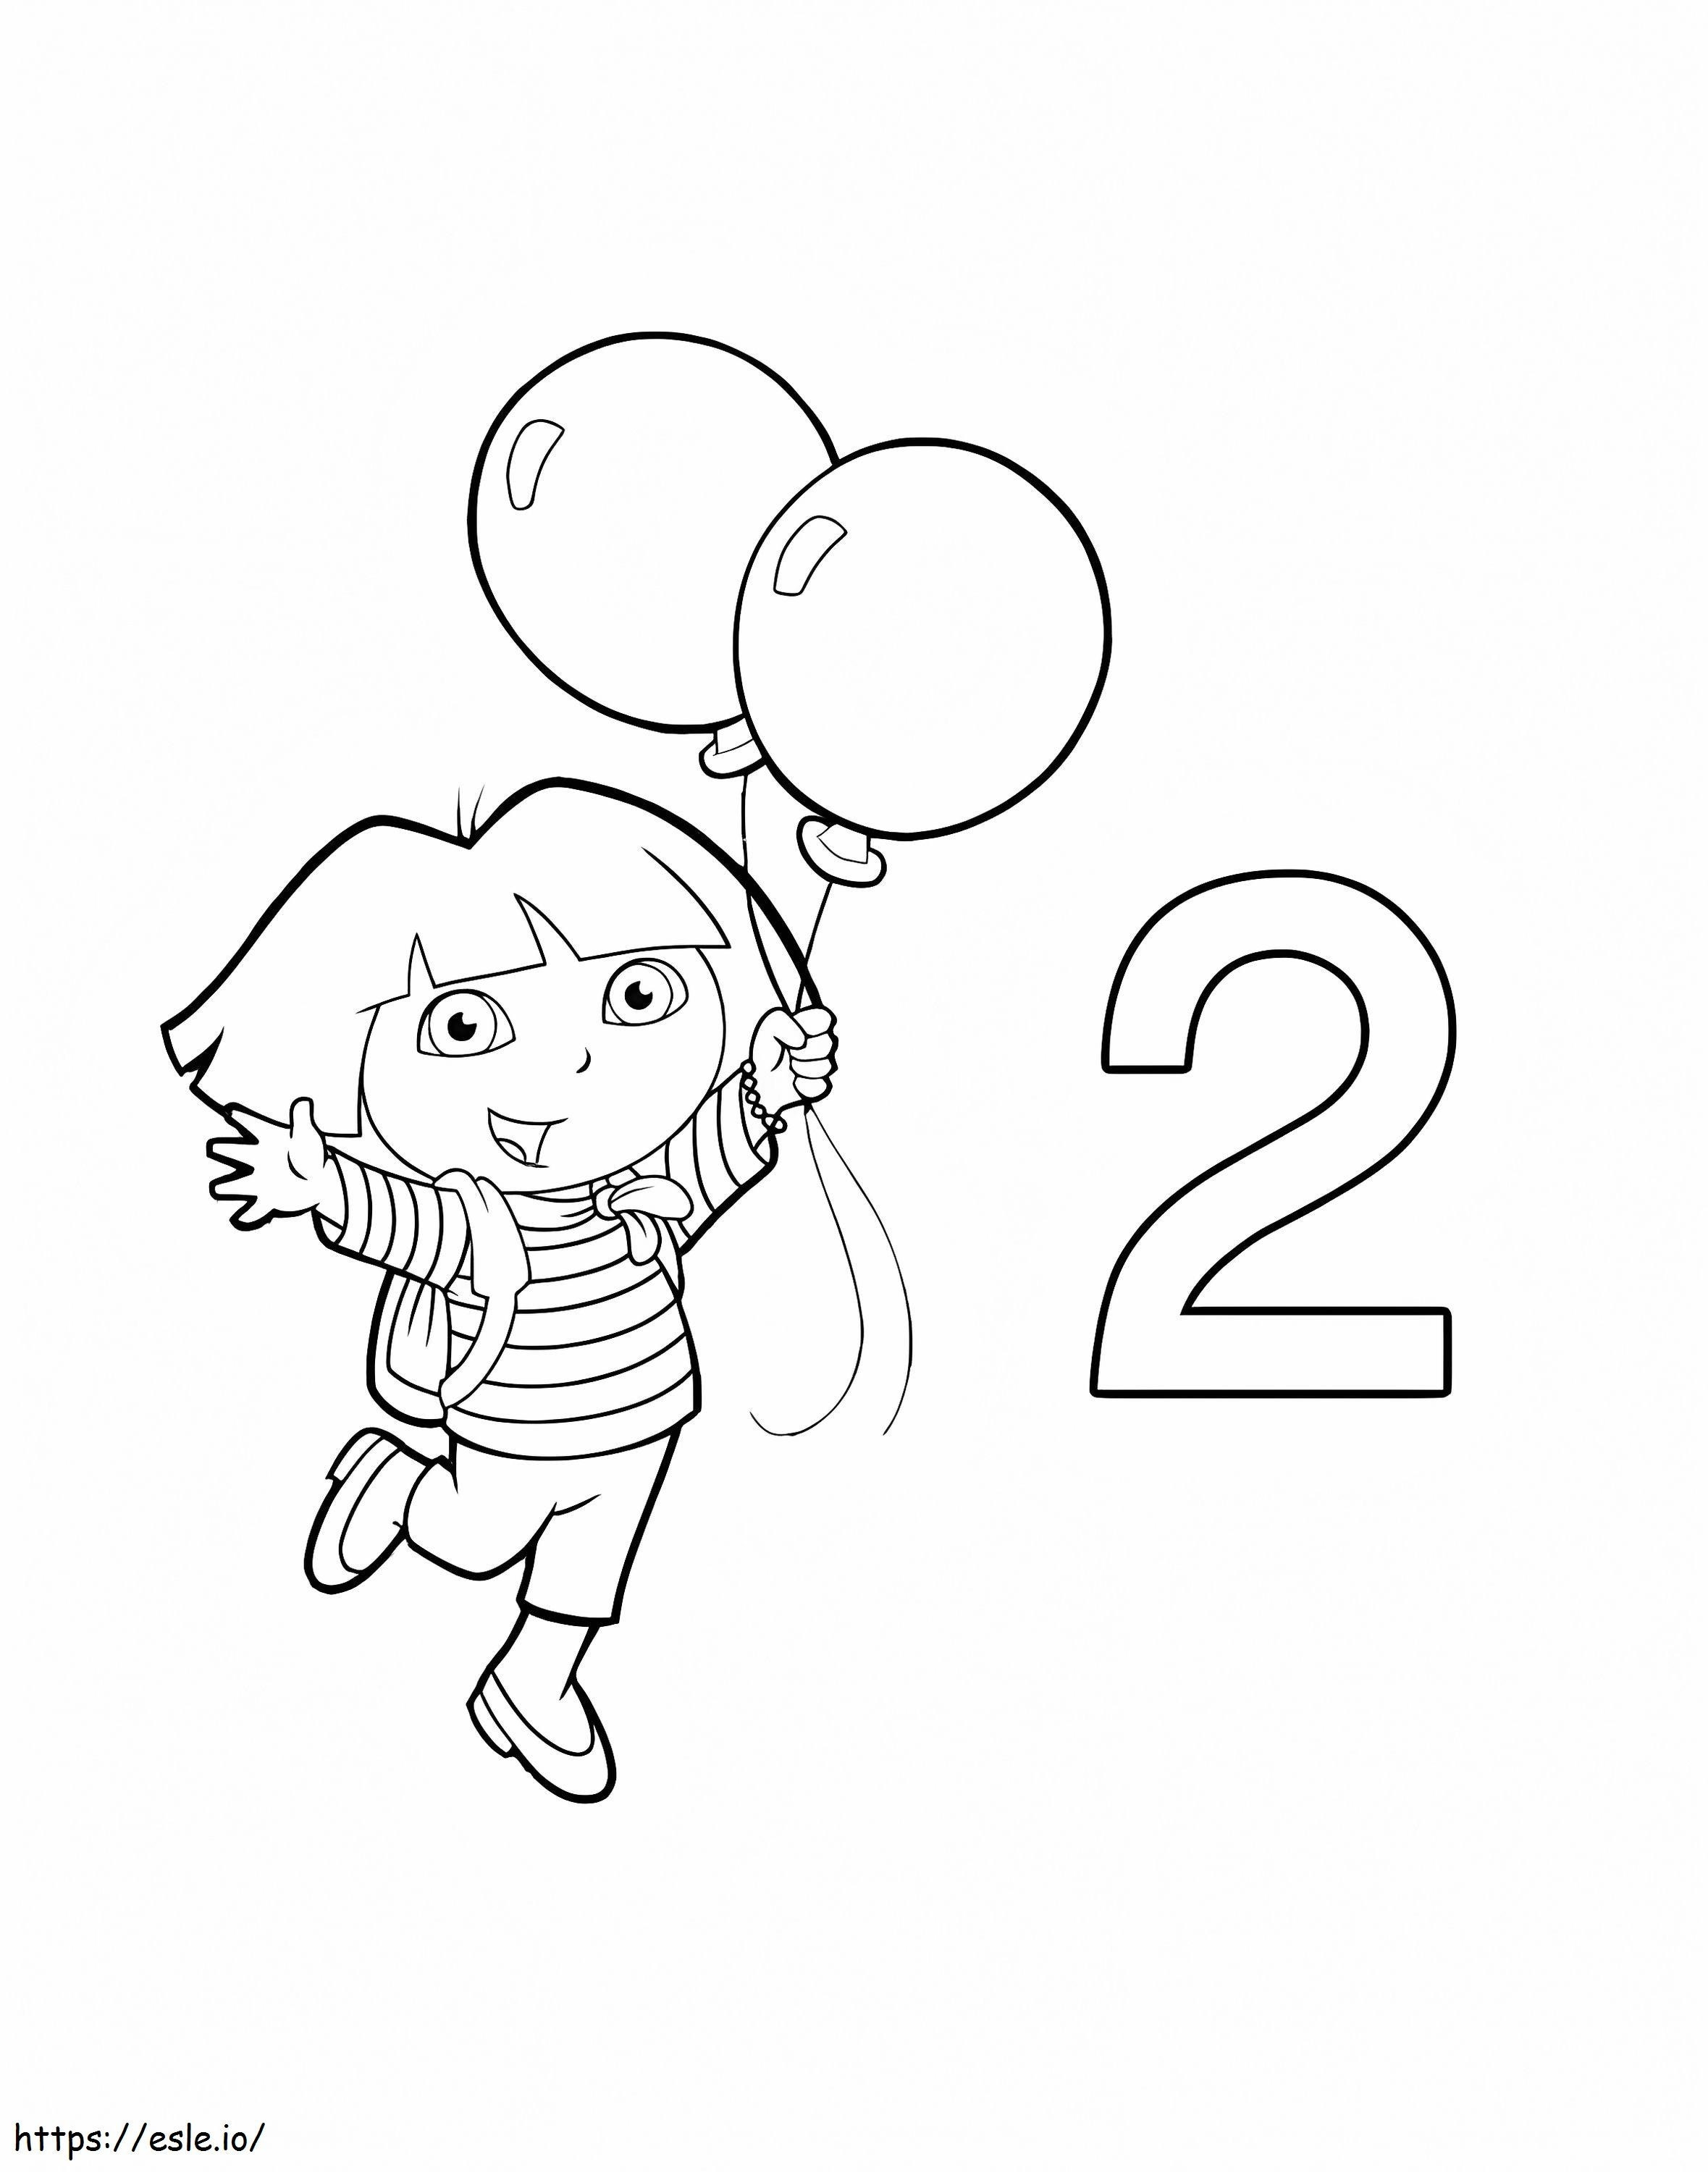 Numero 2 e Dora che tengono due palloncini da colorare